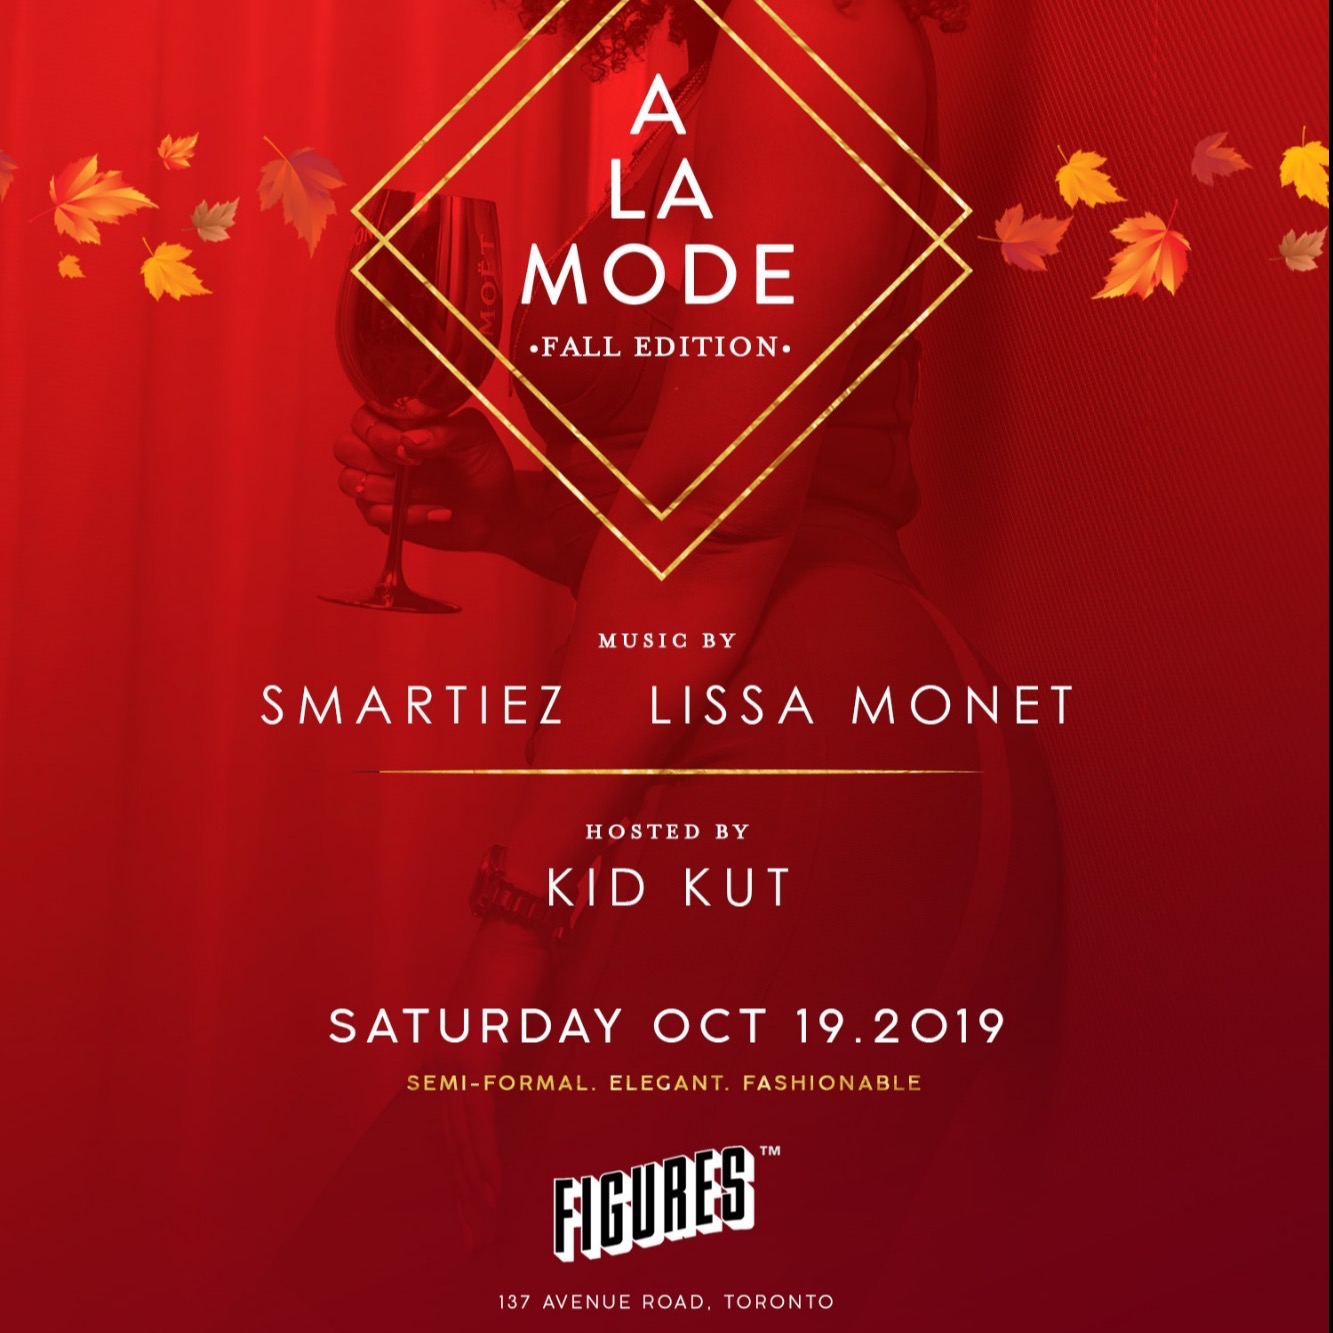 A La Mode - Fall Edition